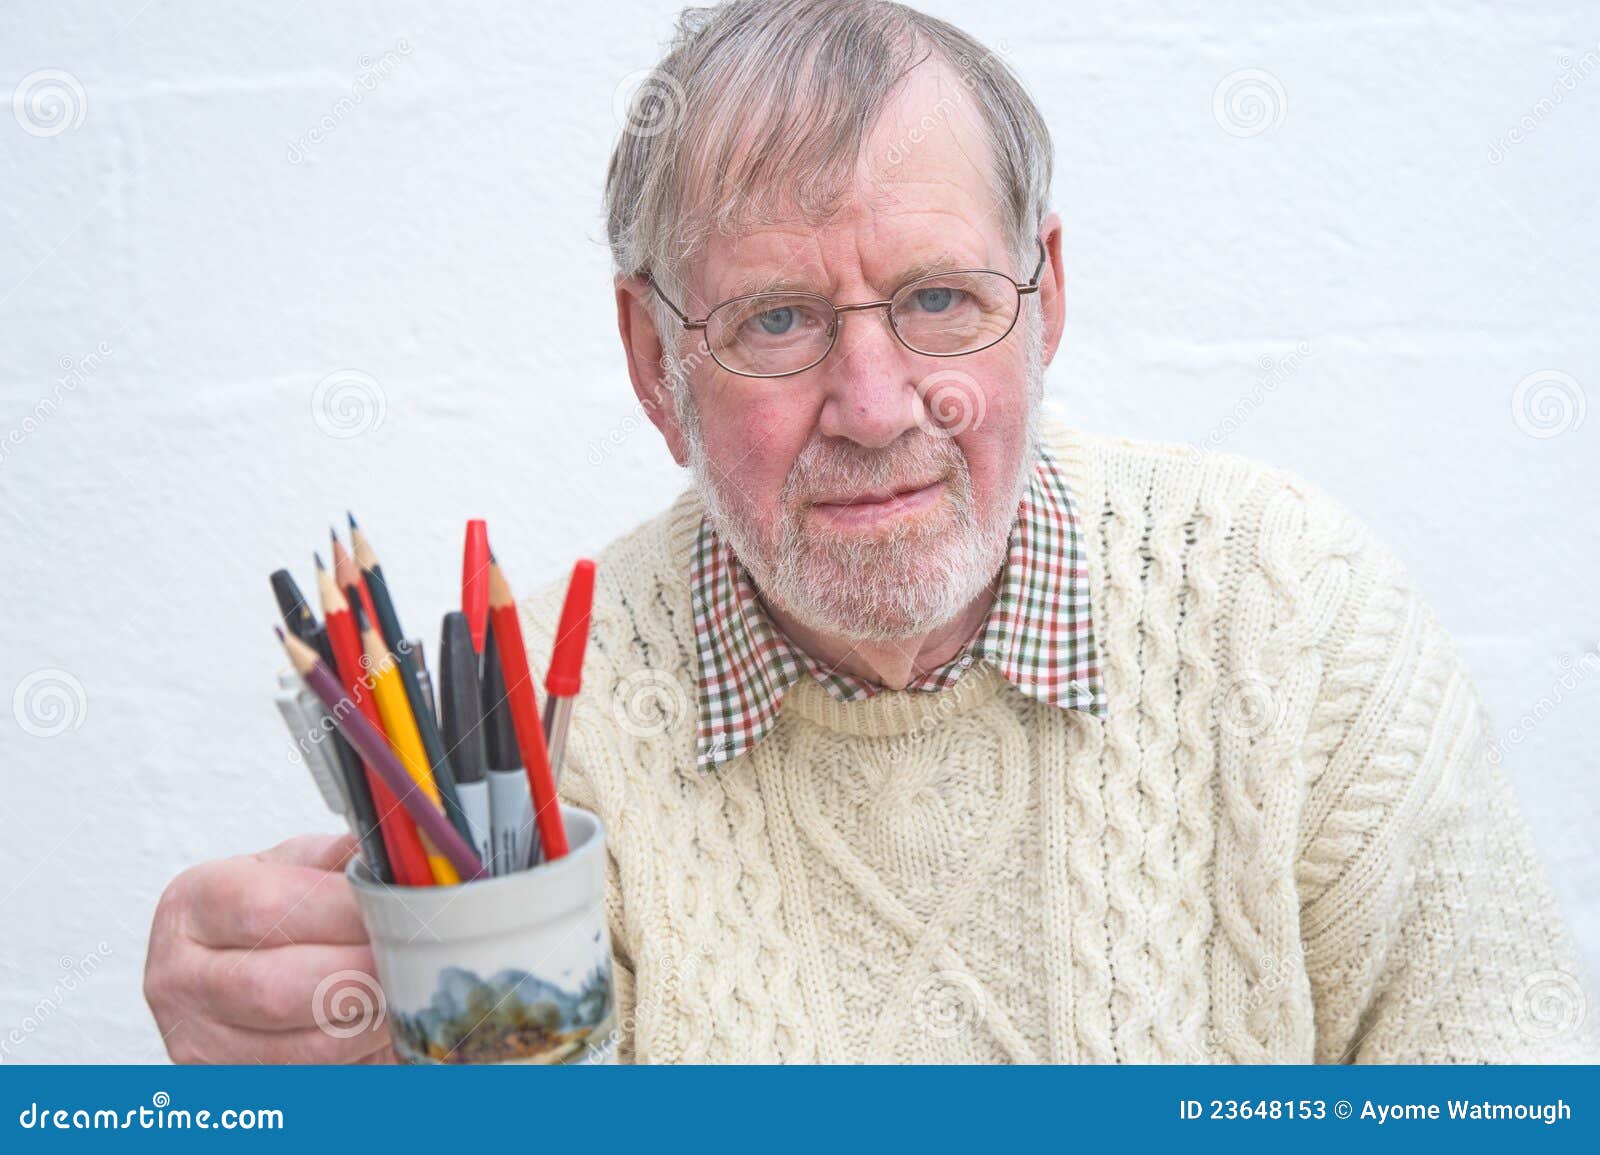 senior holding a mug of pens and pencils.